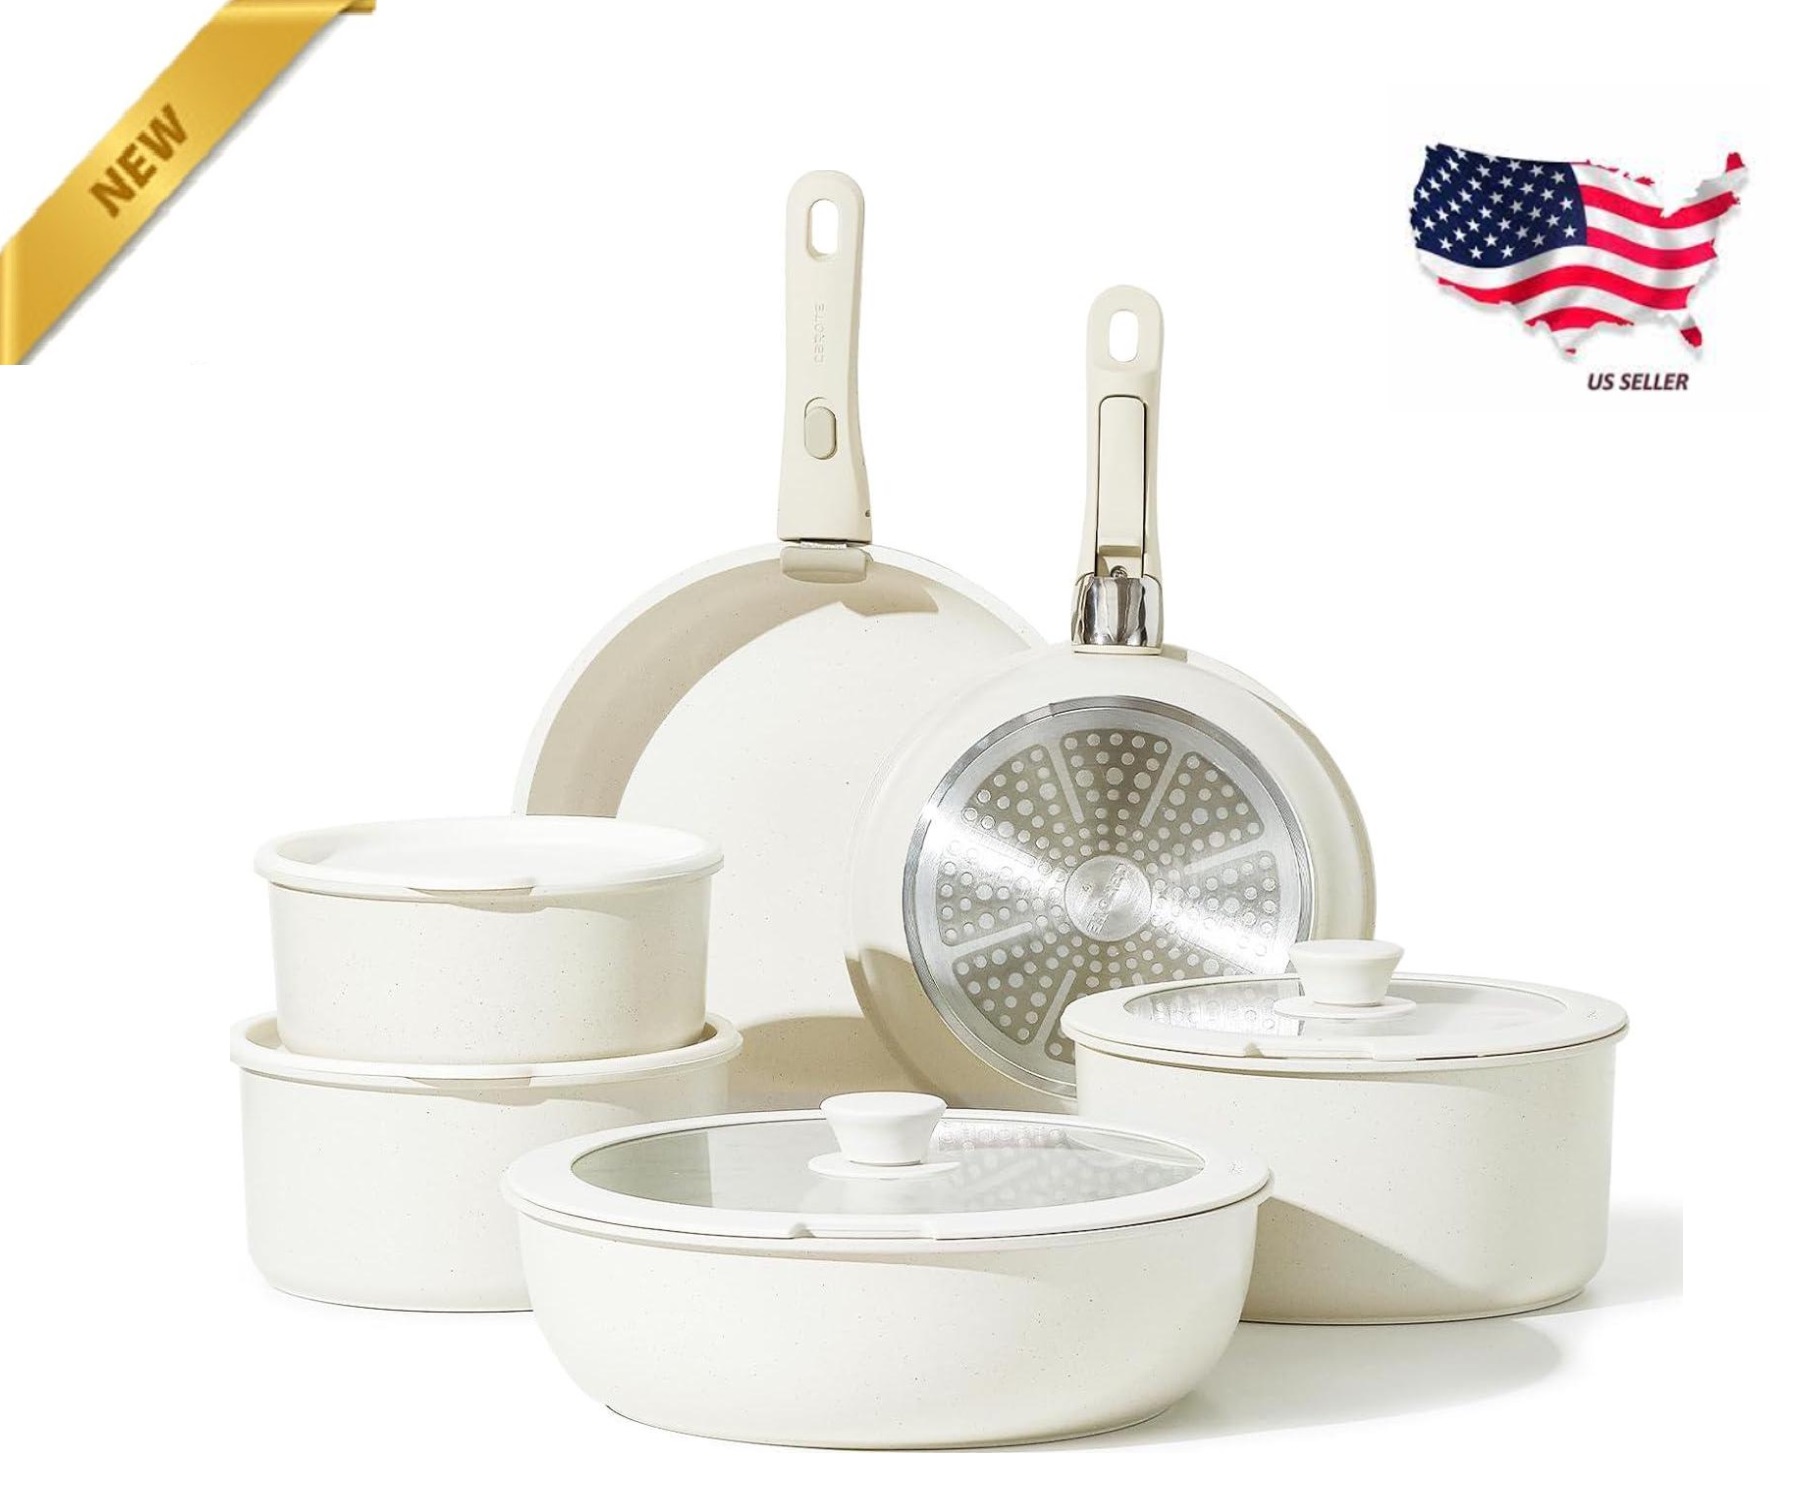 12 Pcs Pots and Pans Nonstick Cookware Set Detachable Handle Induction Cookware